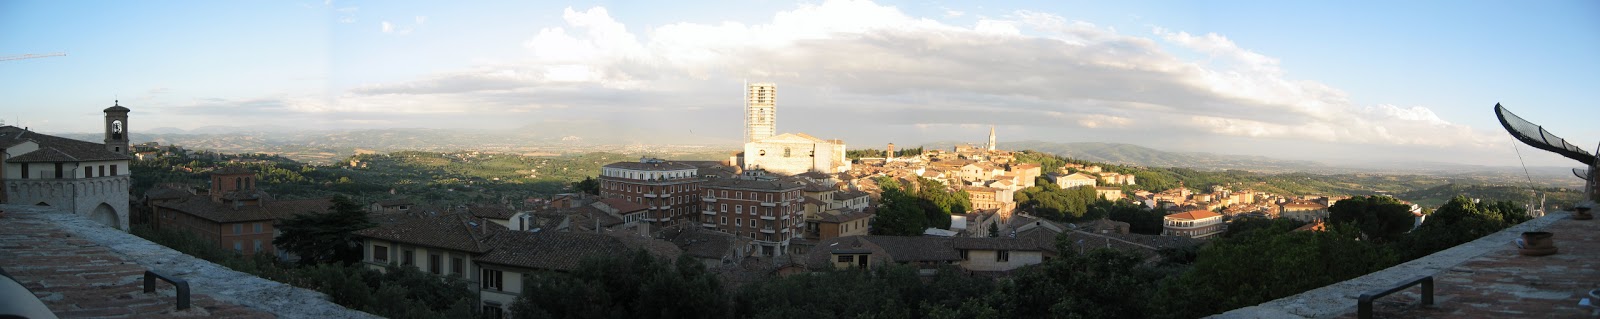 [Perugia_panorama.jpg]